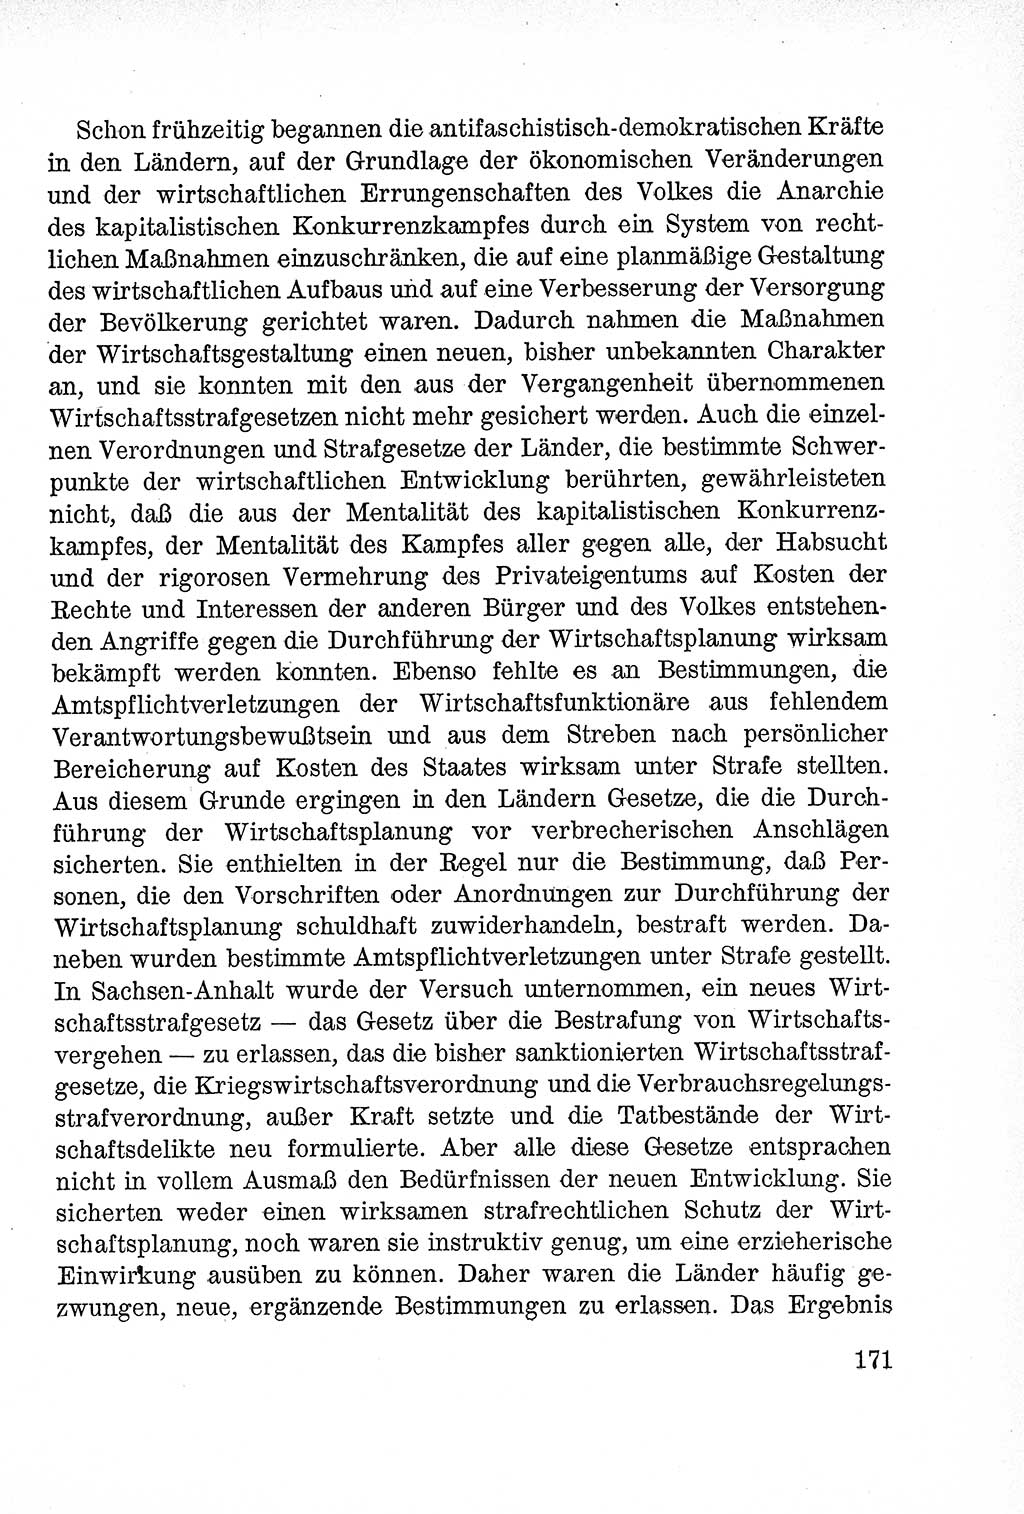 Lehrbuch des Strafrechts der Deutschen Demokratischen Republik (DDR), Allgemeiner Teil 1957, Seite 171 (Lb. Strafr. DDR AT 1957, S. 171)